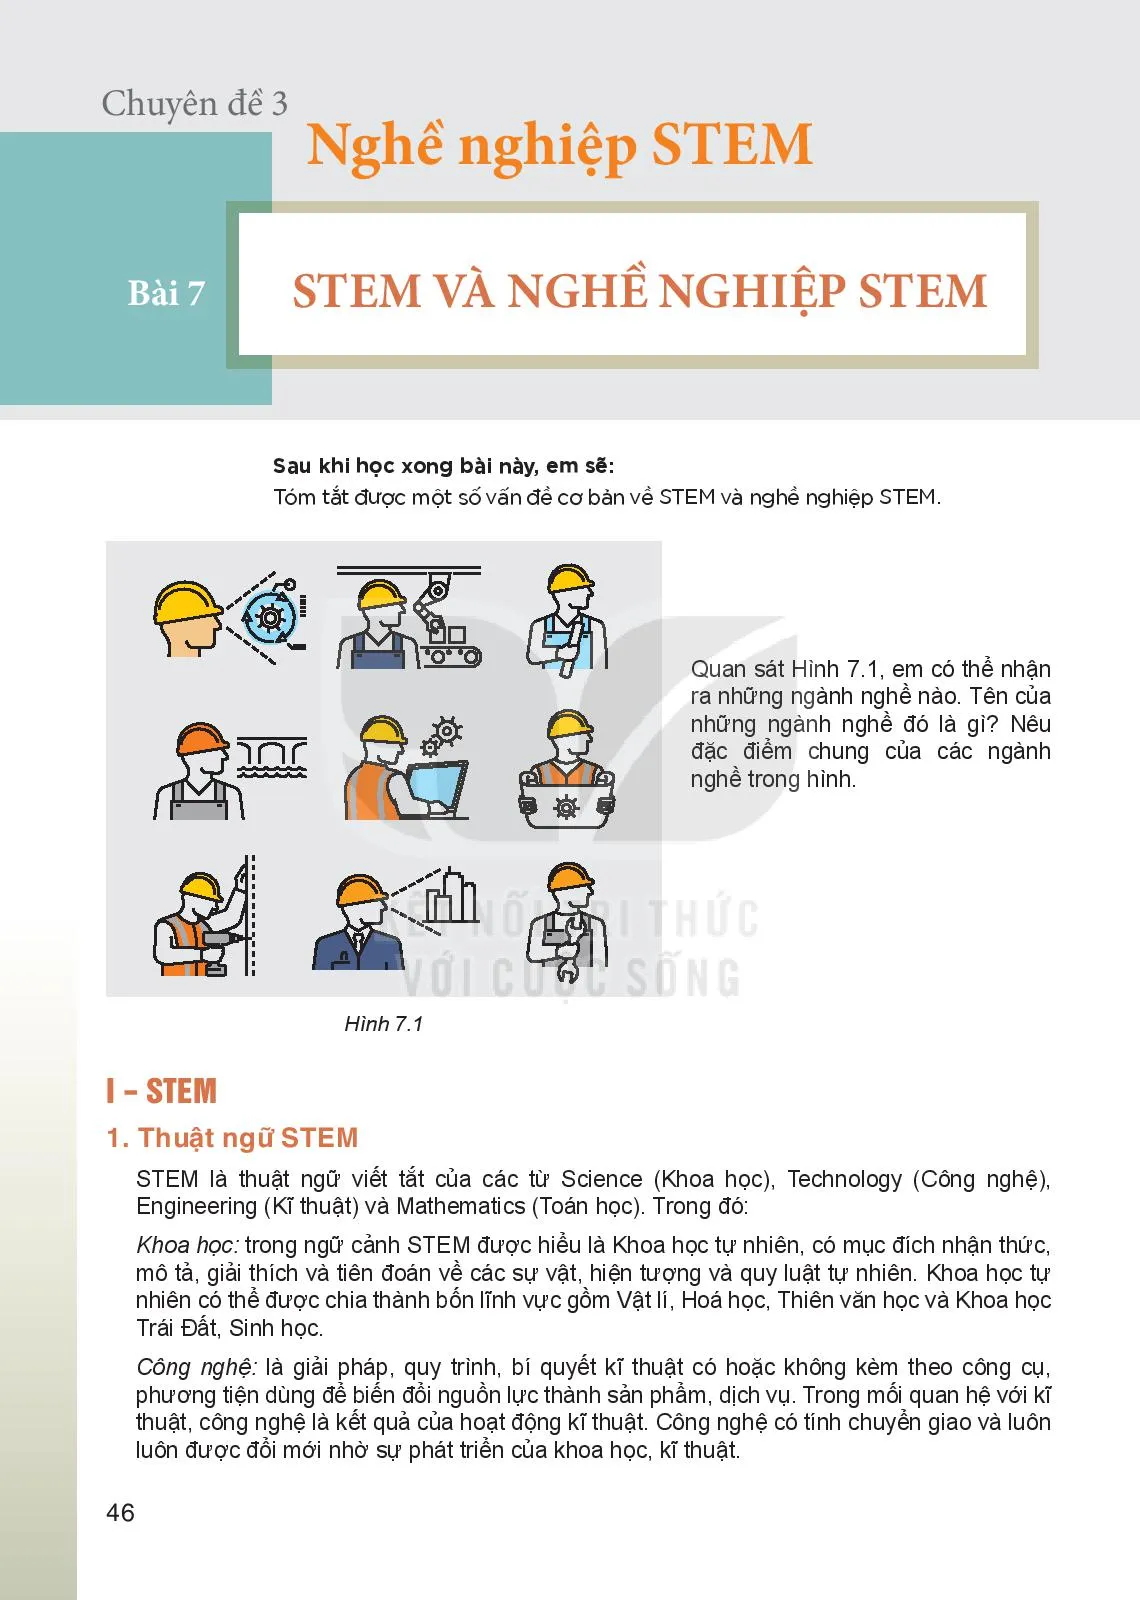 Bài 7. STEM và nghề nghiệp STEM